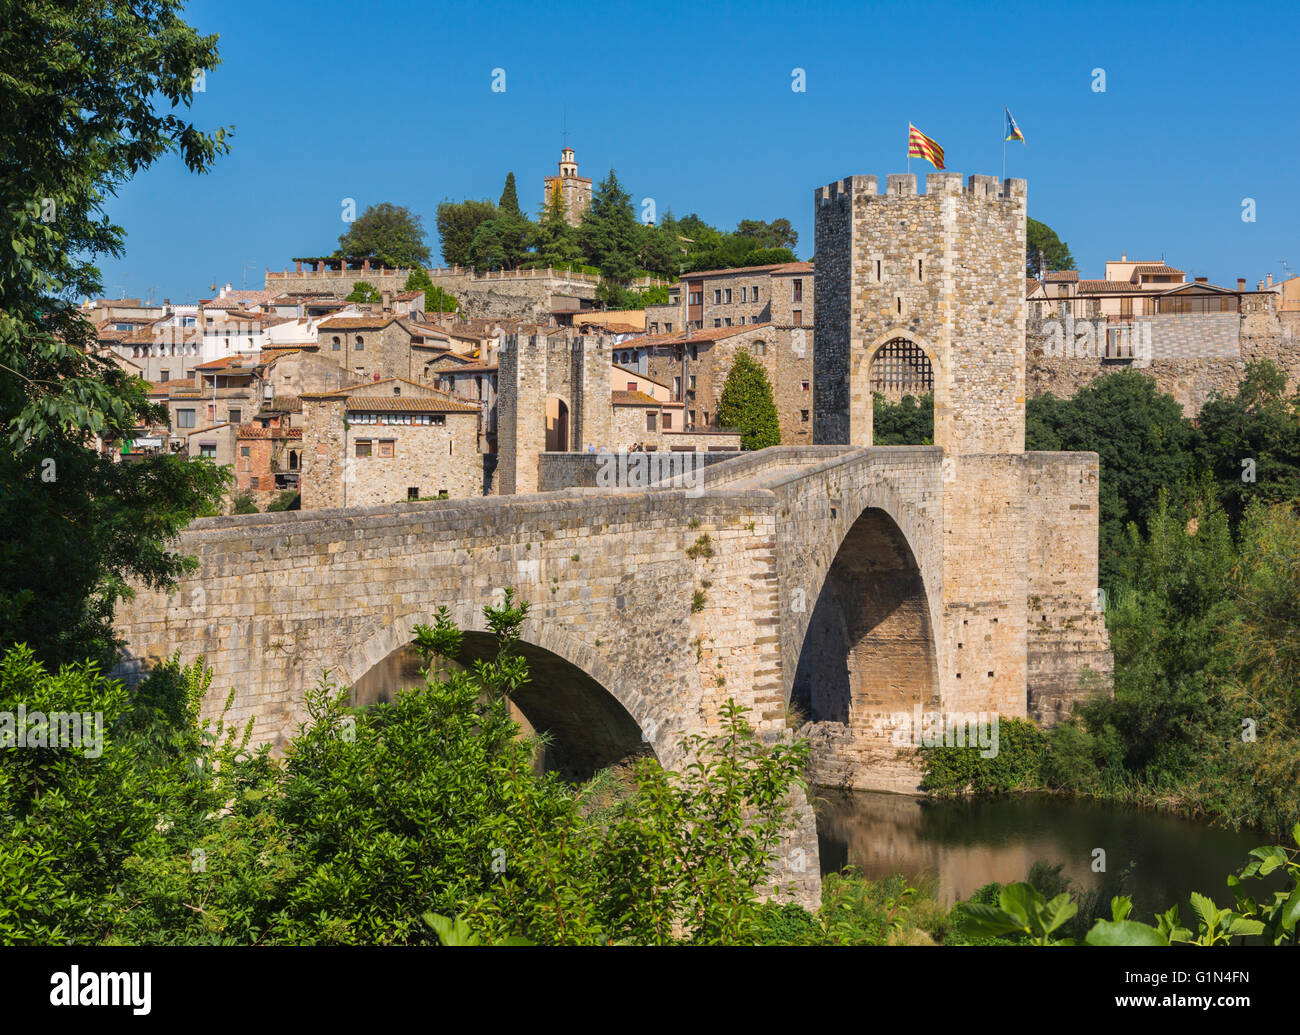 Besalu, provincia di Girona, in Catalogna, Spagna. Ponte fortificato conosciuta come El Pont Vell, il vecchio ponte che attraversa il fiume Fluvia. Foto Stock